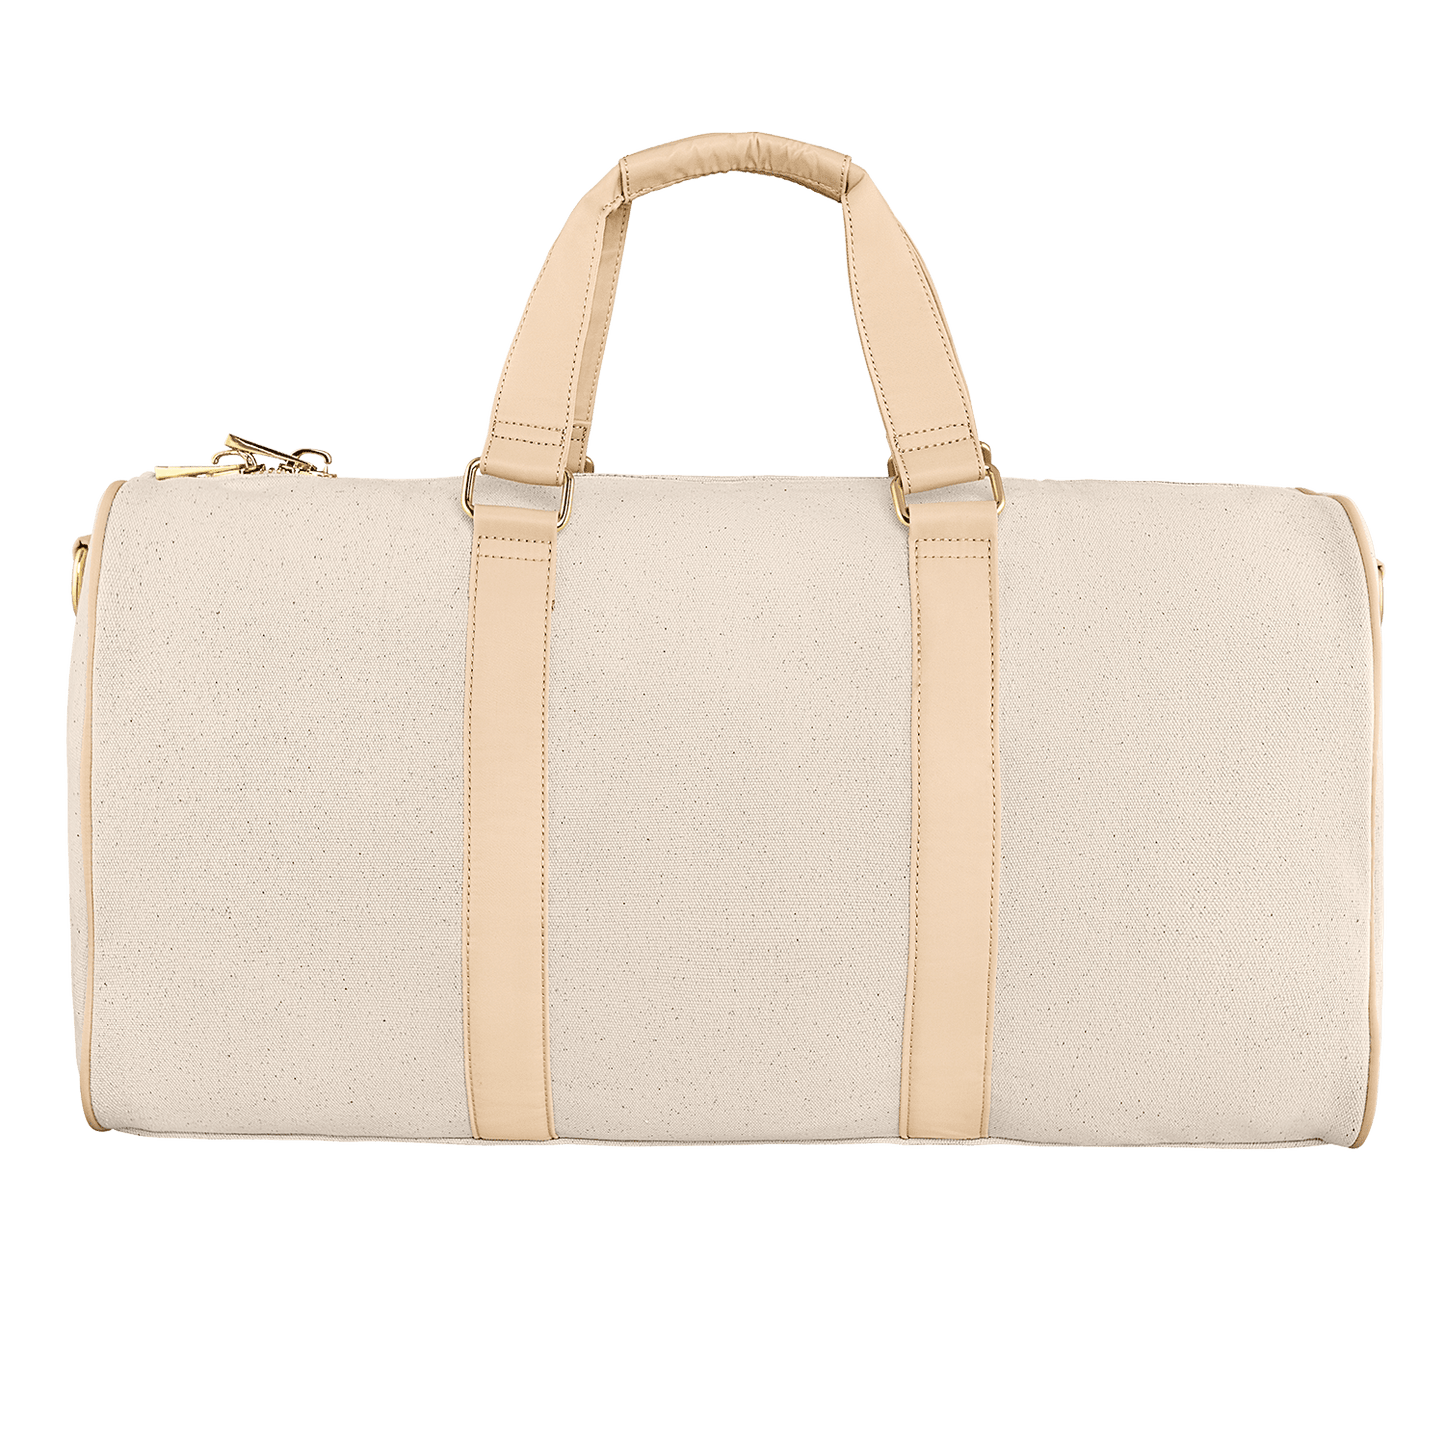 Classic Duffle Bag